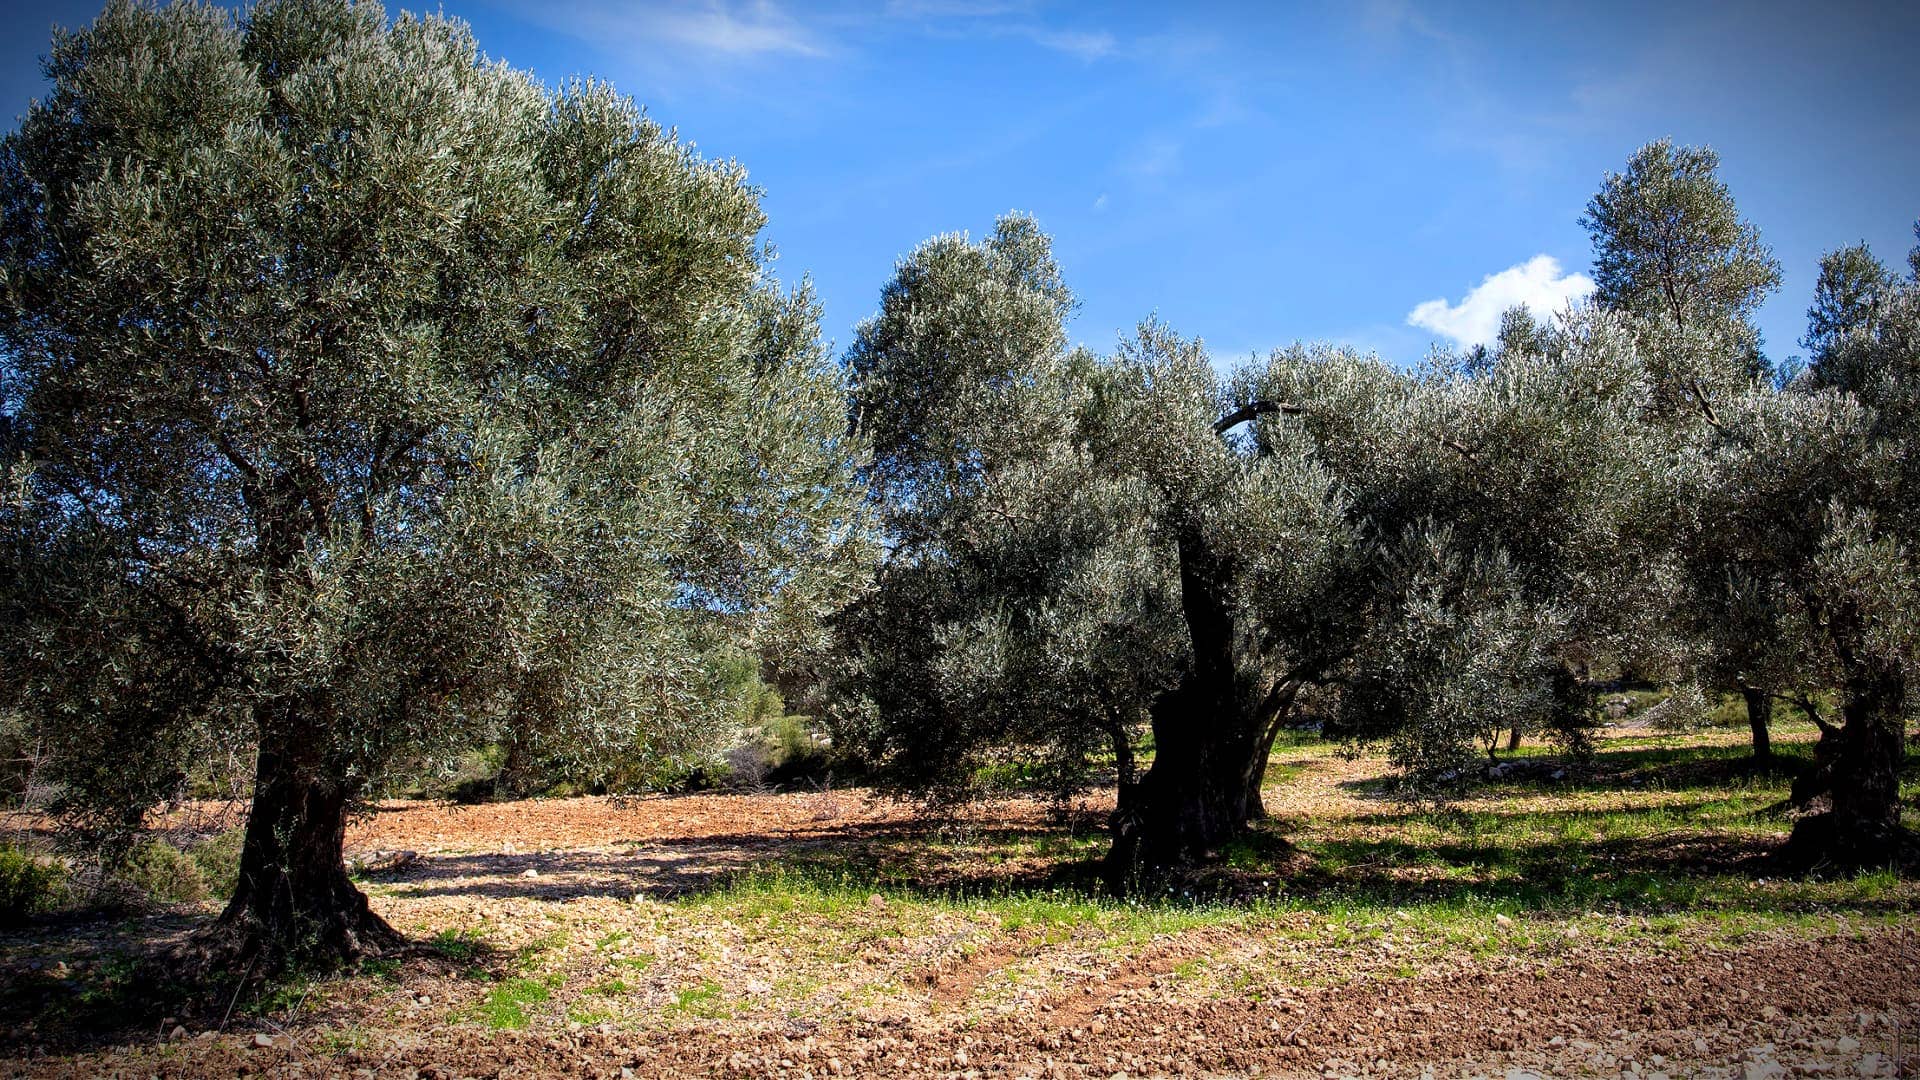 afrika-nahost-unternehmen-in-der-turkei-studie-empfehlt-investitionen-in-olivenfarmen-statt-kohleminen-olivenöl-zeiten